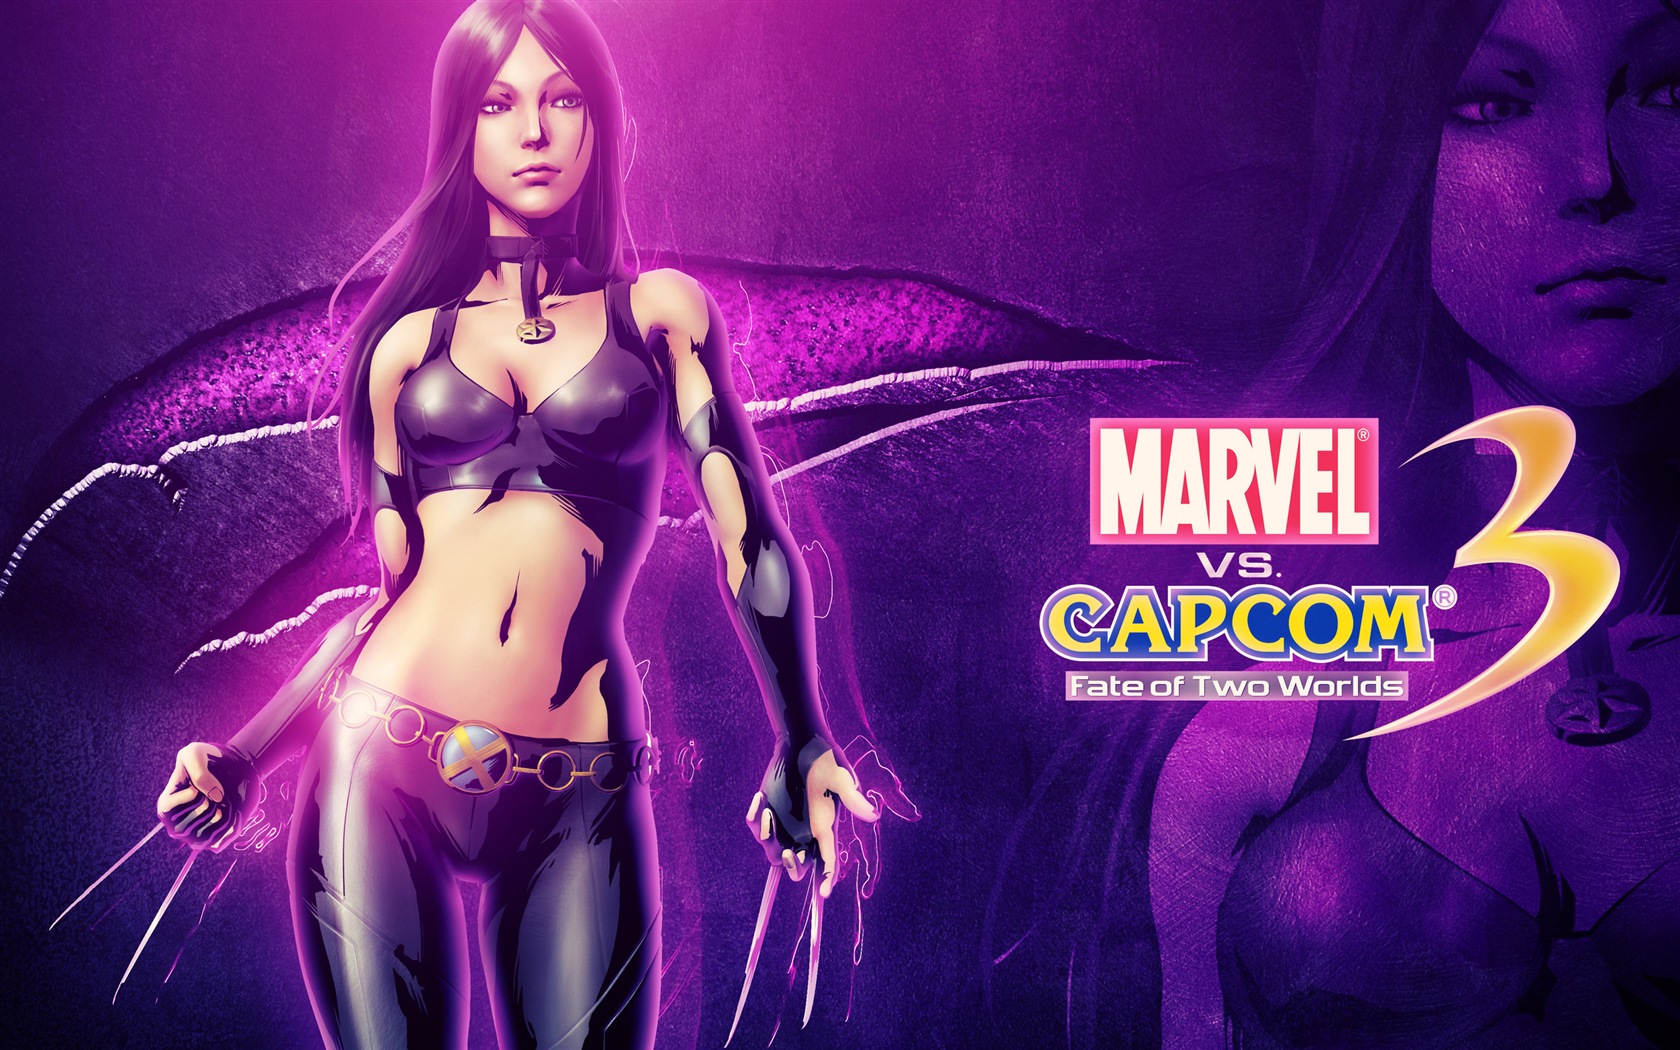 Marvel Vs Capcom 3 Fate Of Two Worlds Hd Fondos De Pantalla De Juegos 10 1680x1050 Fondos